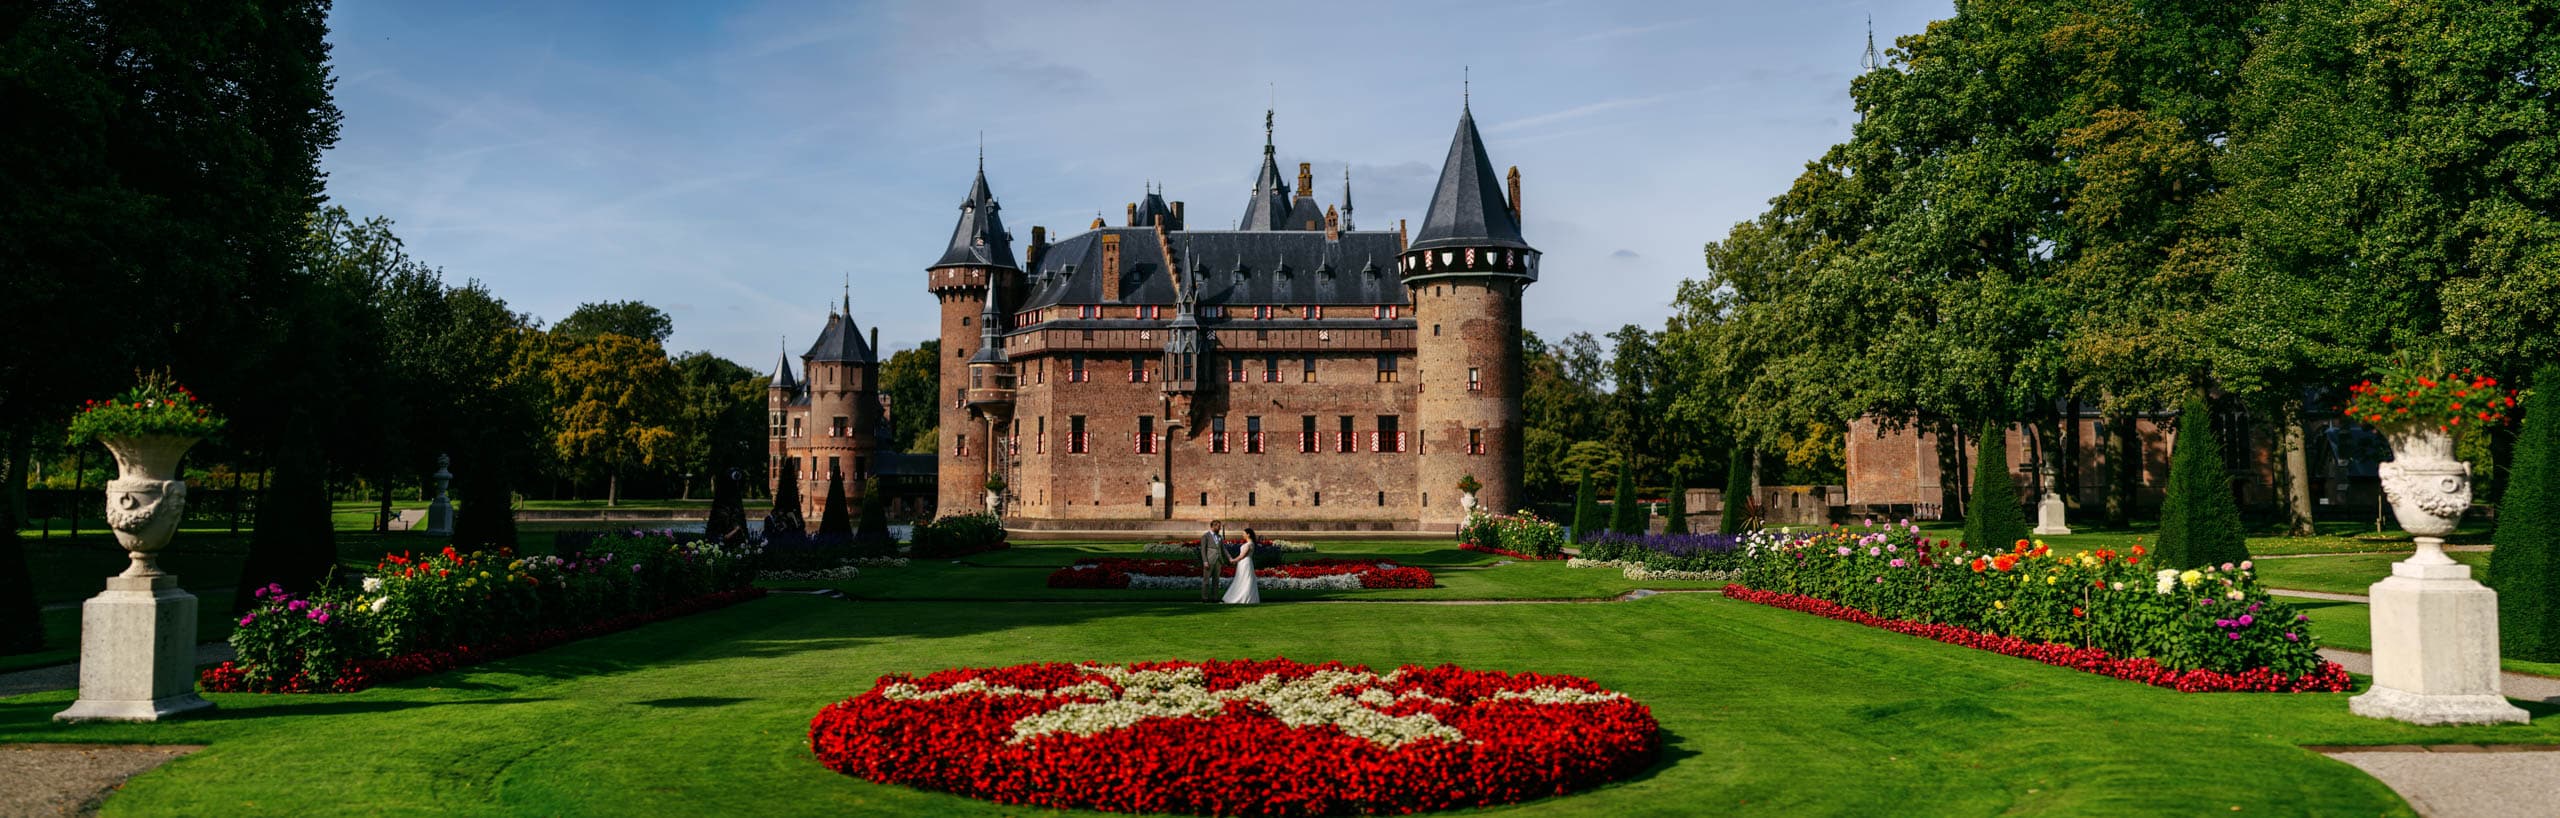 Castle de haar panorama Utrecht Justin Manders Photography